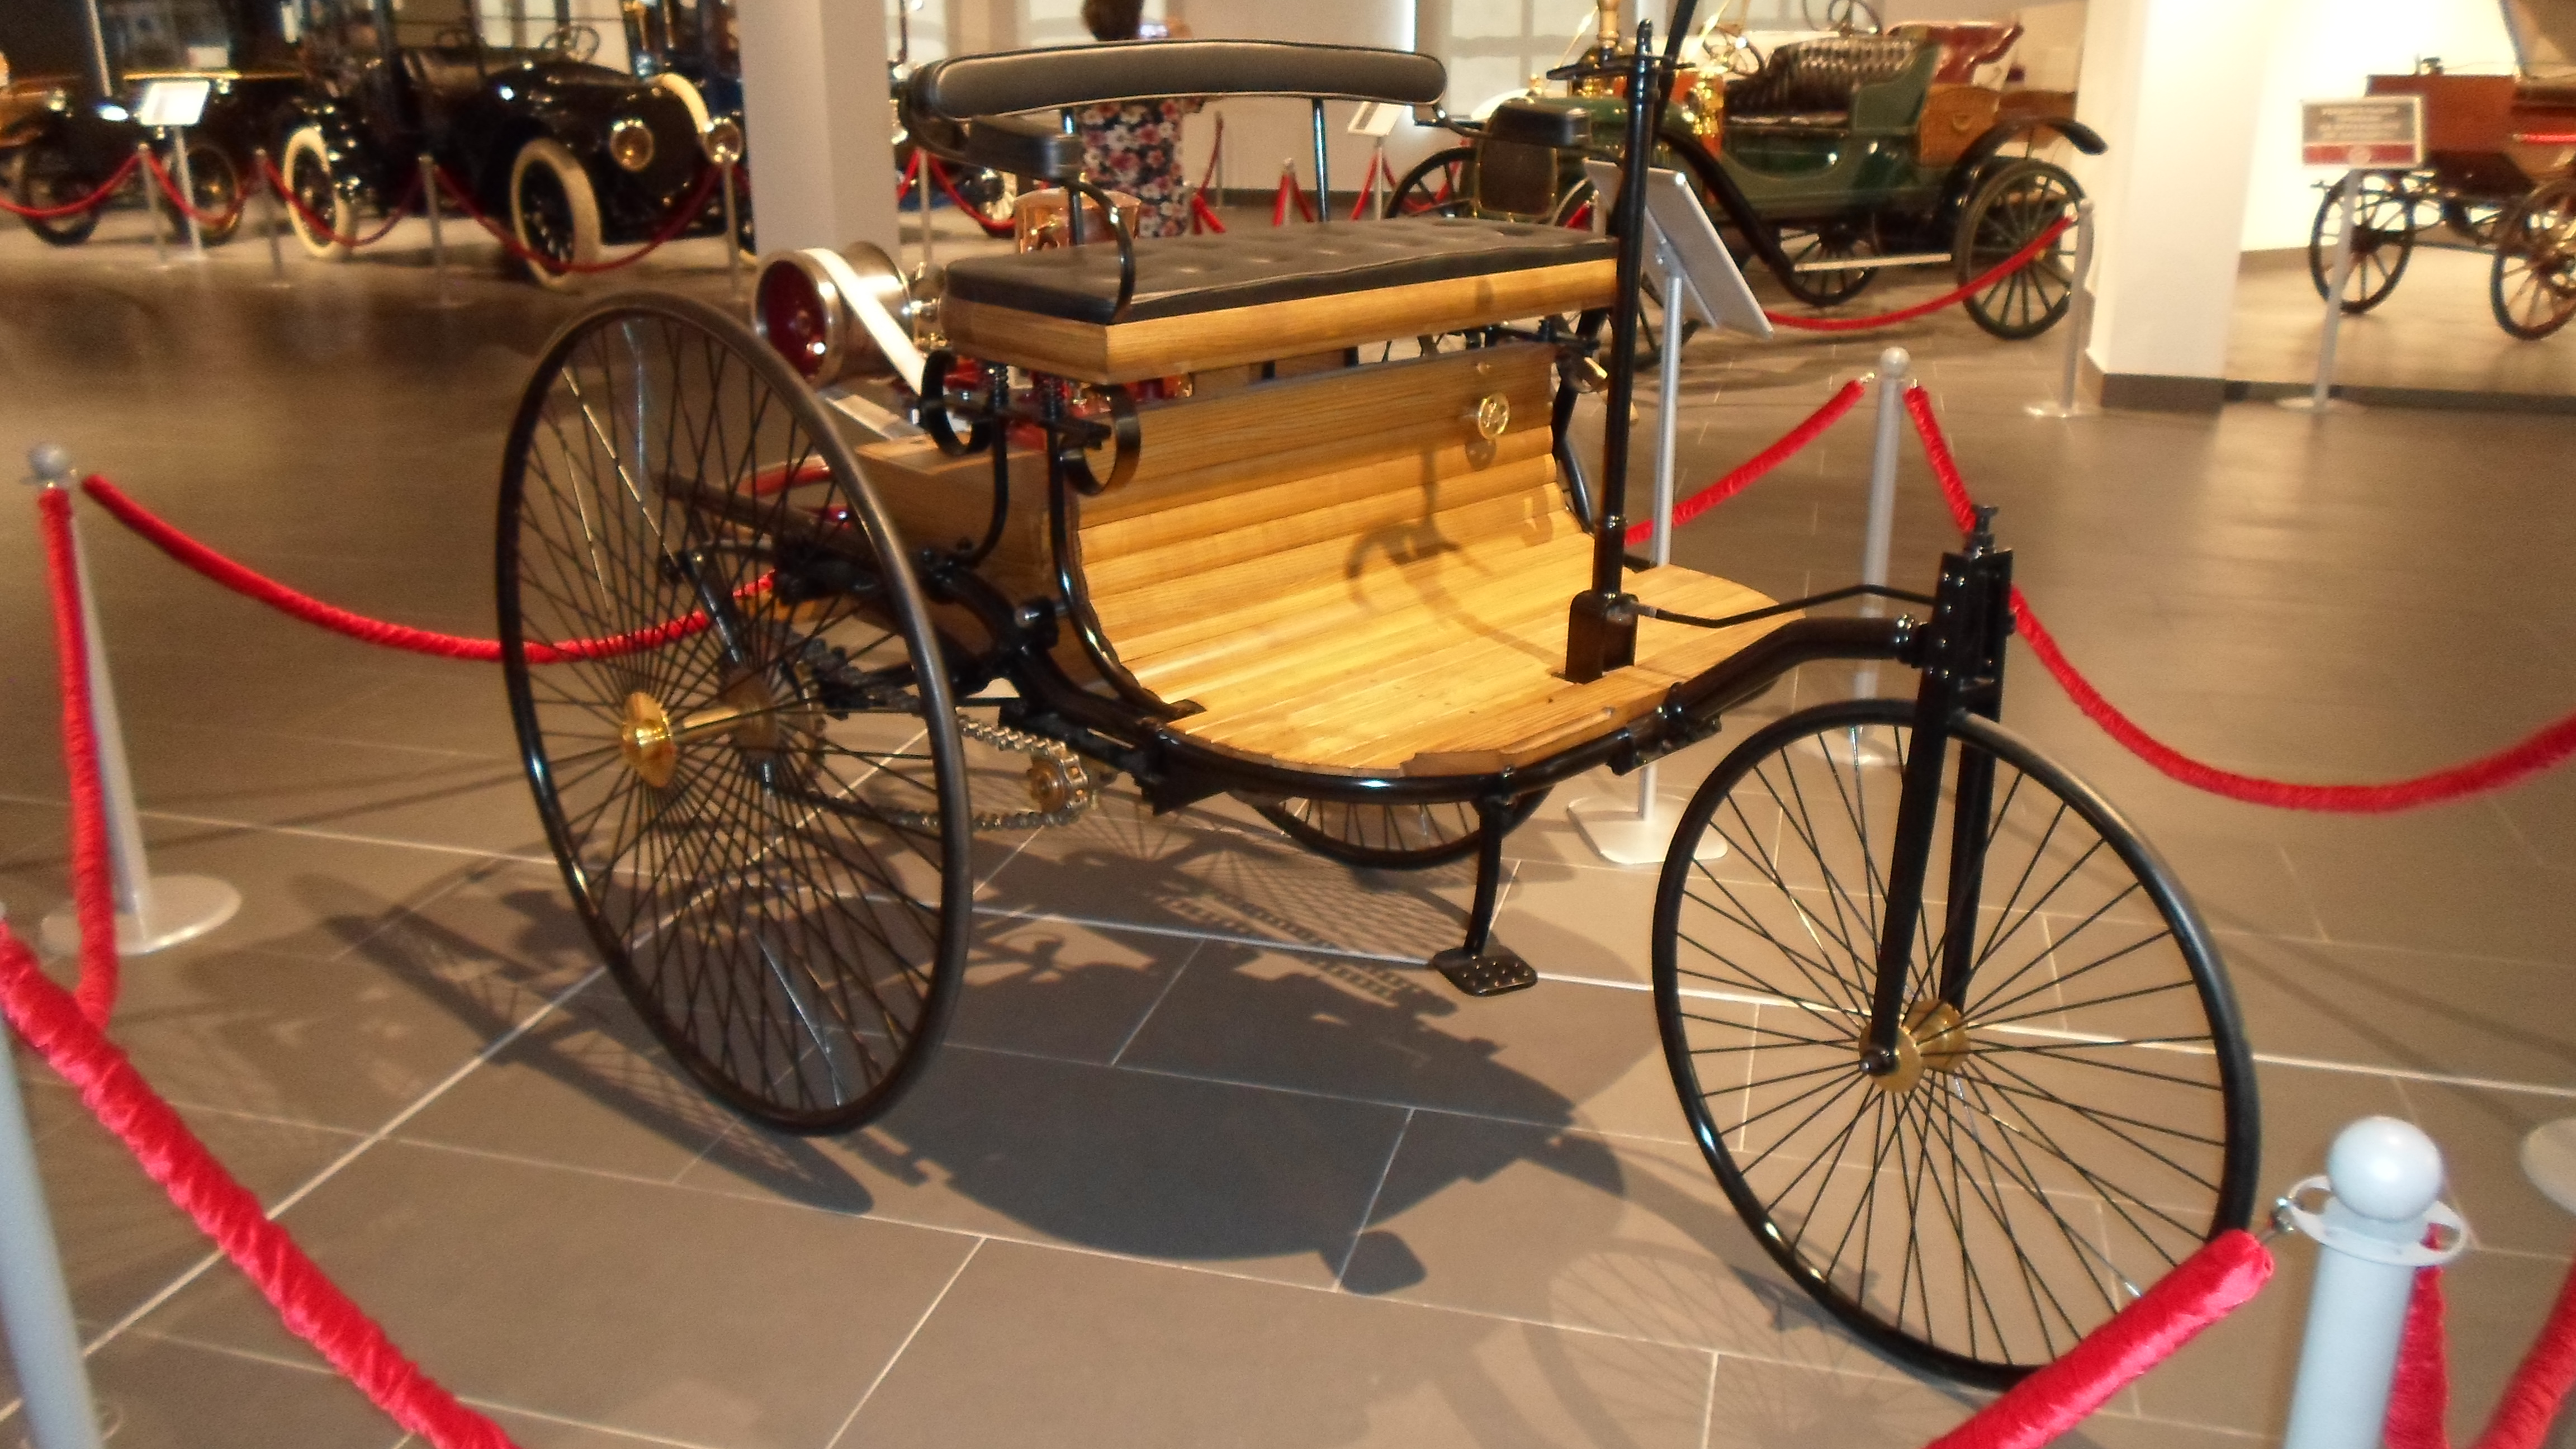 1886-1893. Benz Patent-Motorwagen